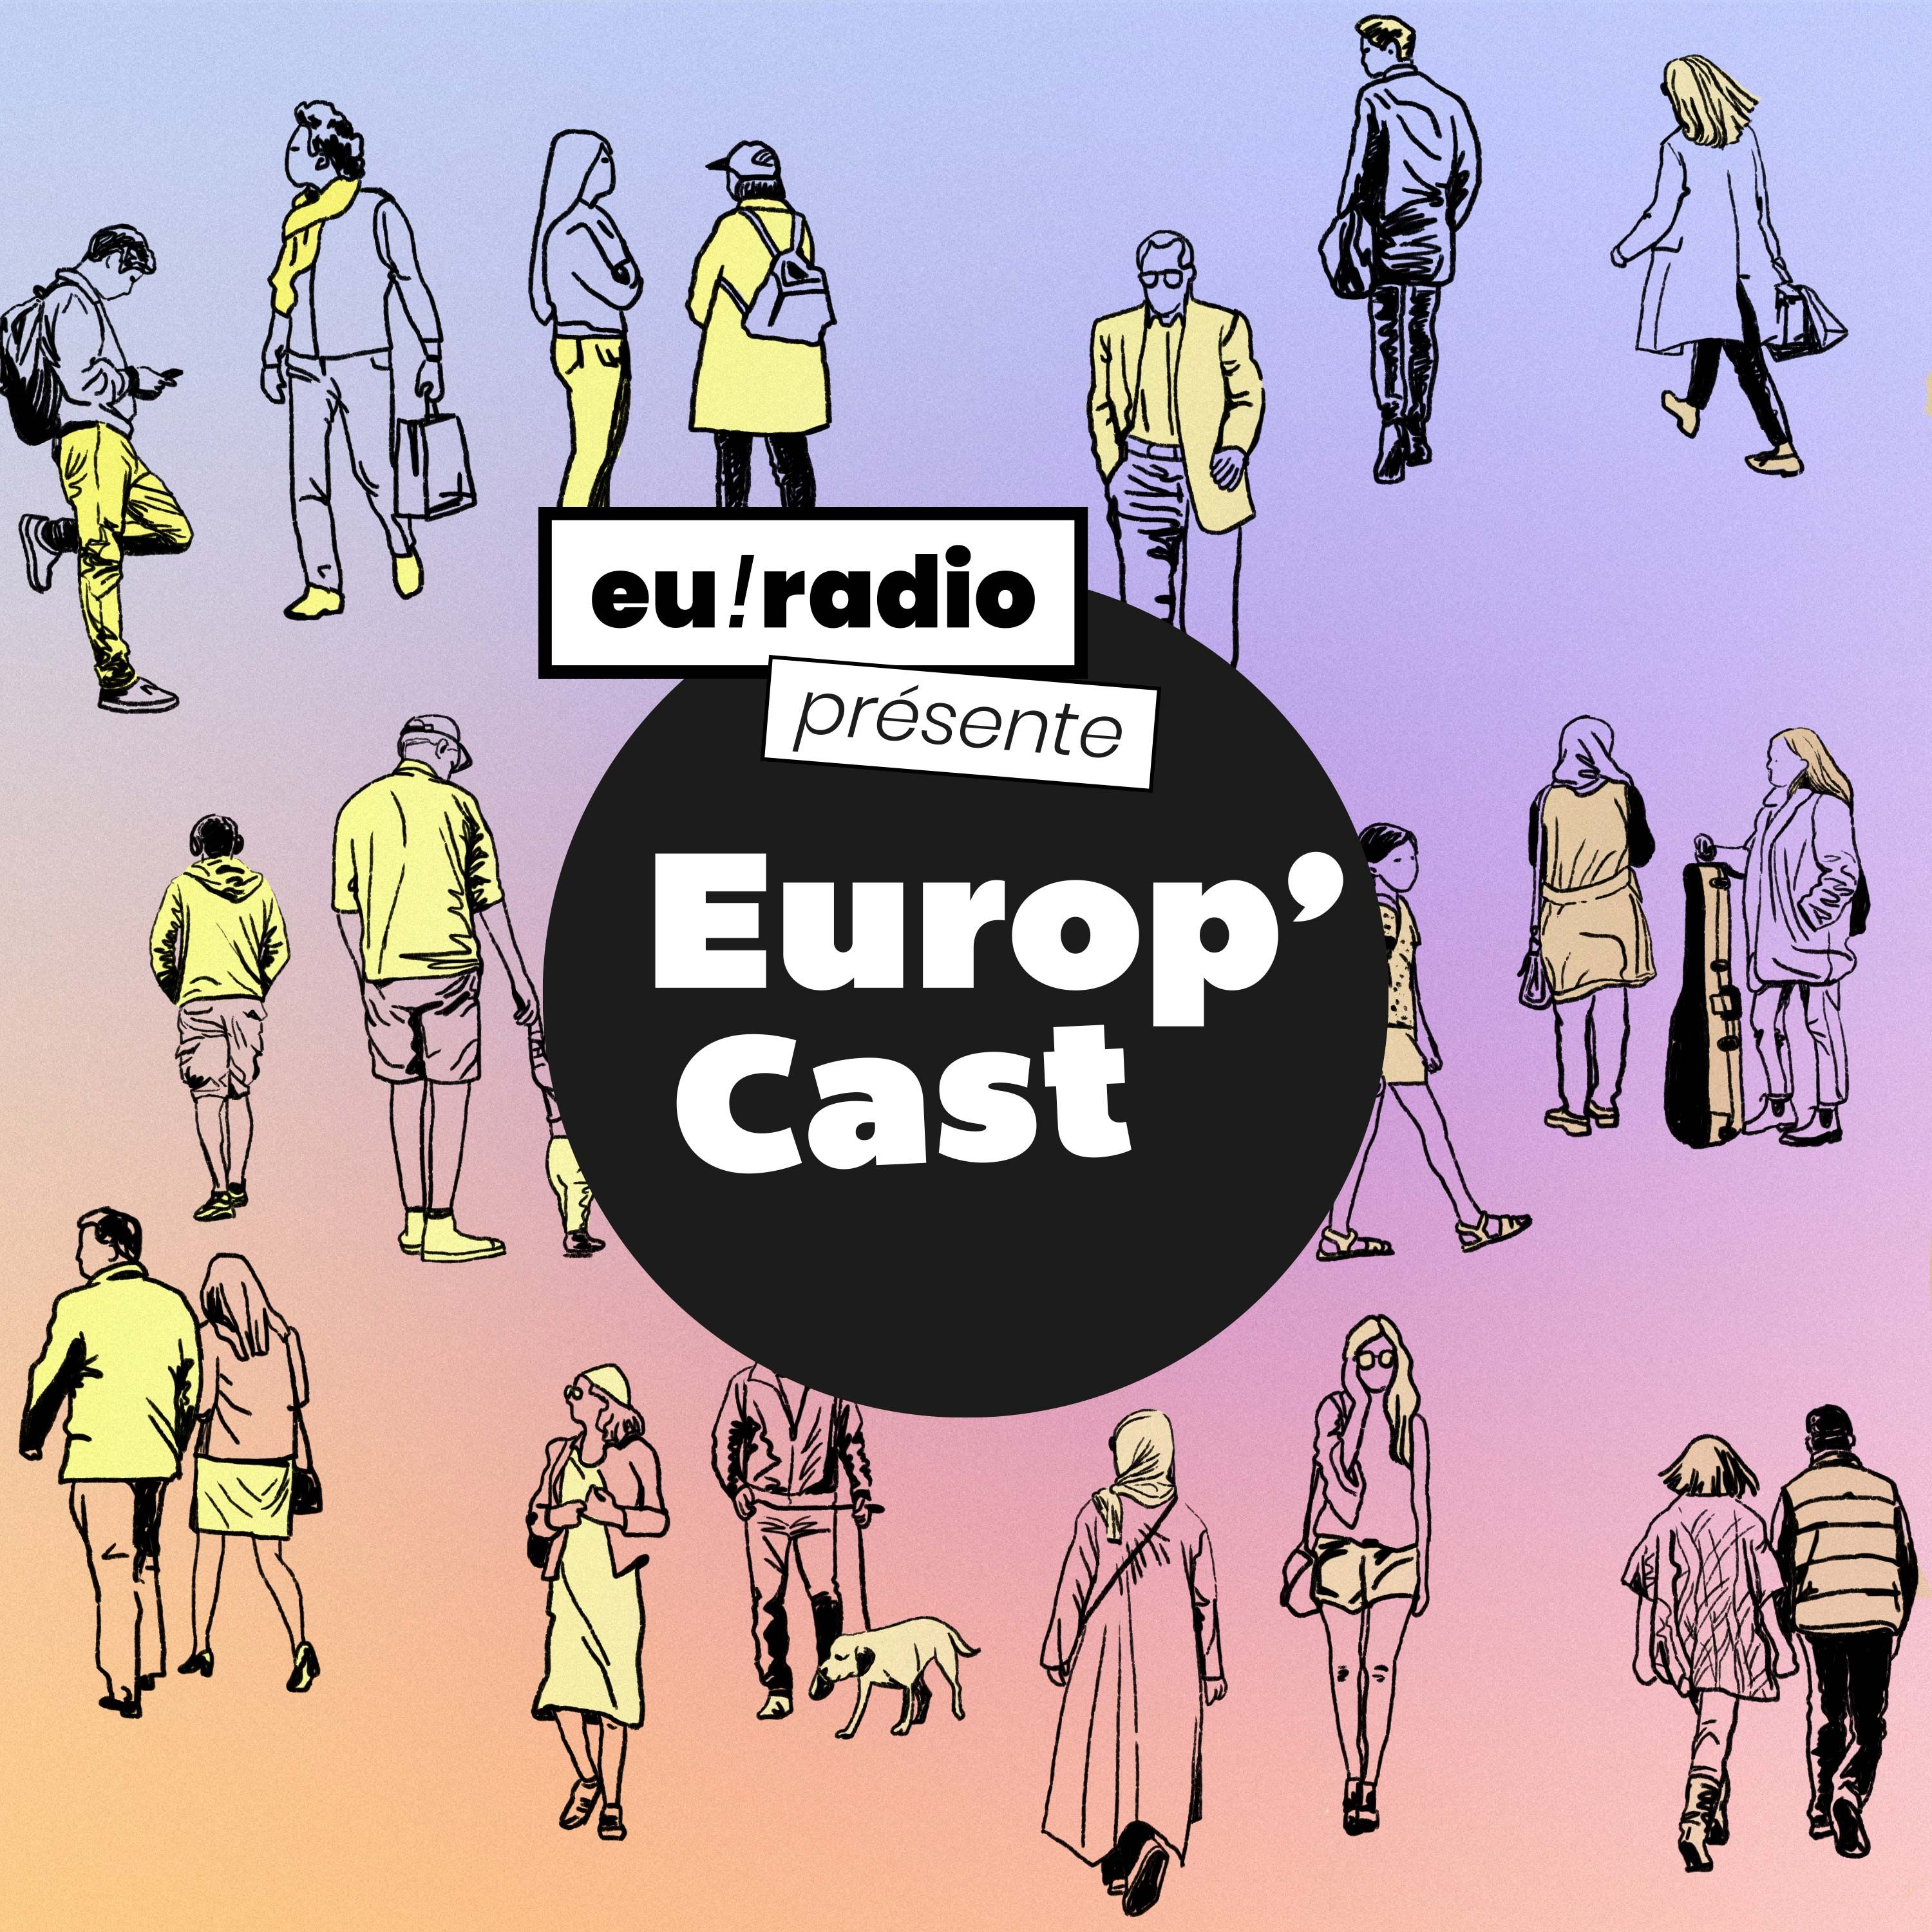 Europ’Cast